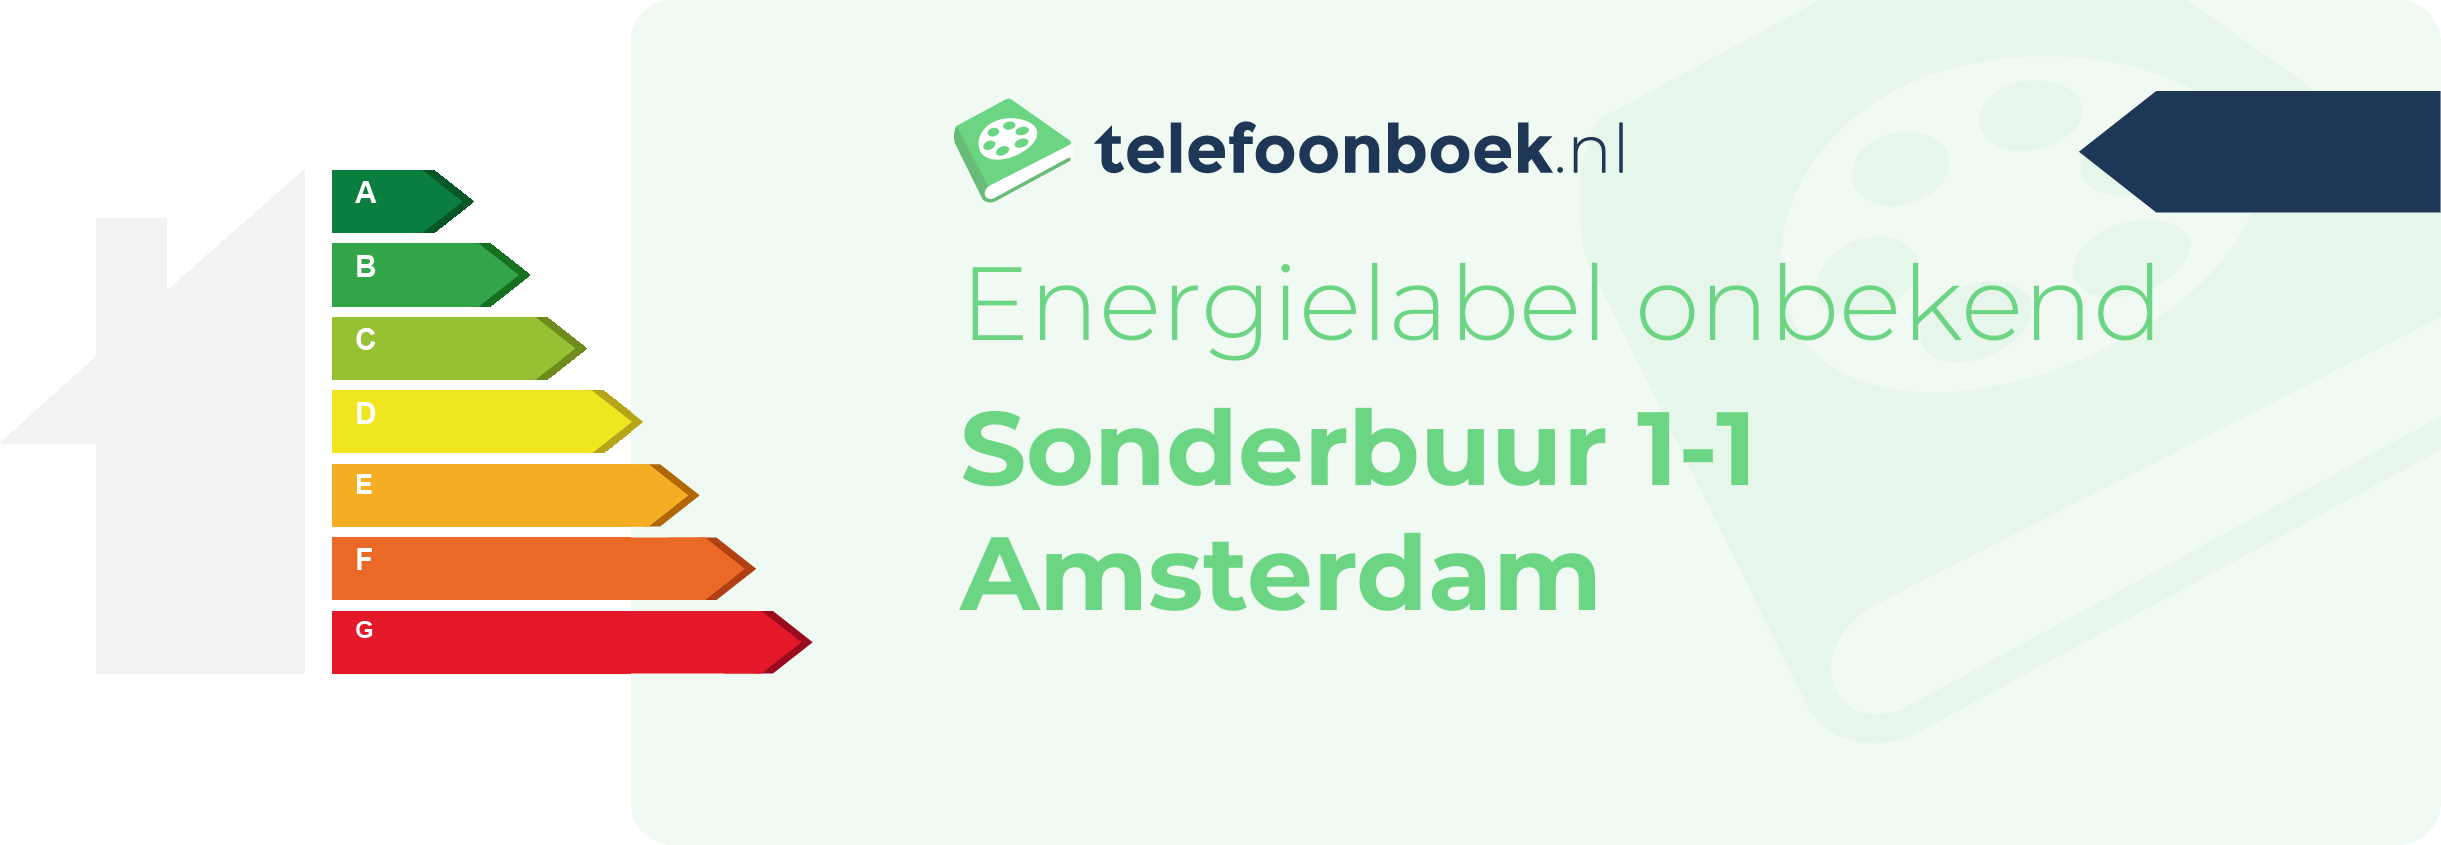 Energielabel Sonderbuur 1-1 Amsterdam